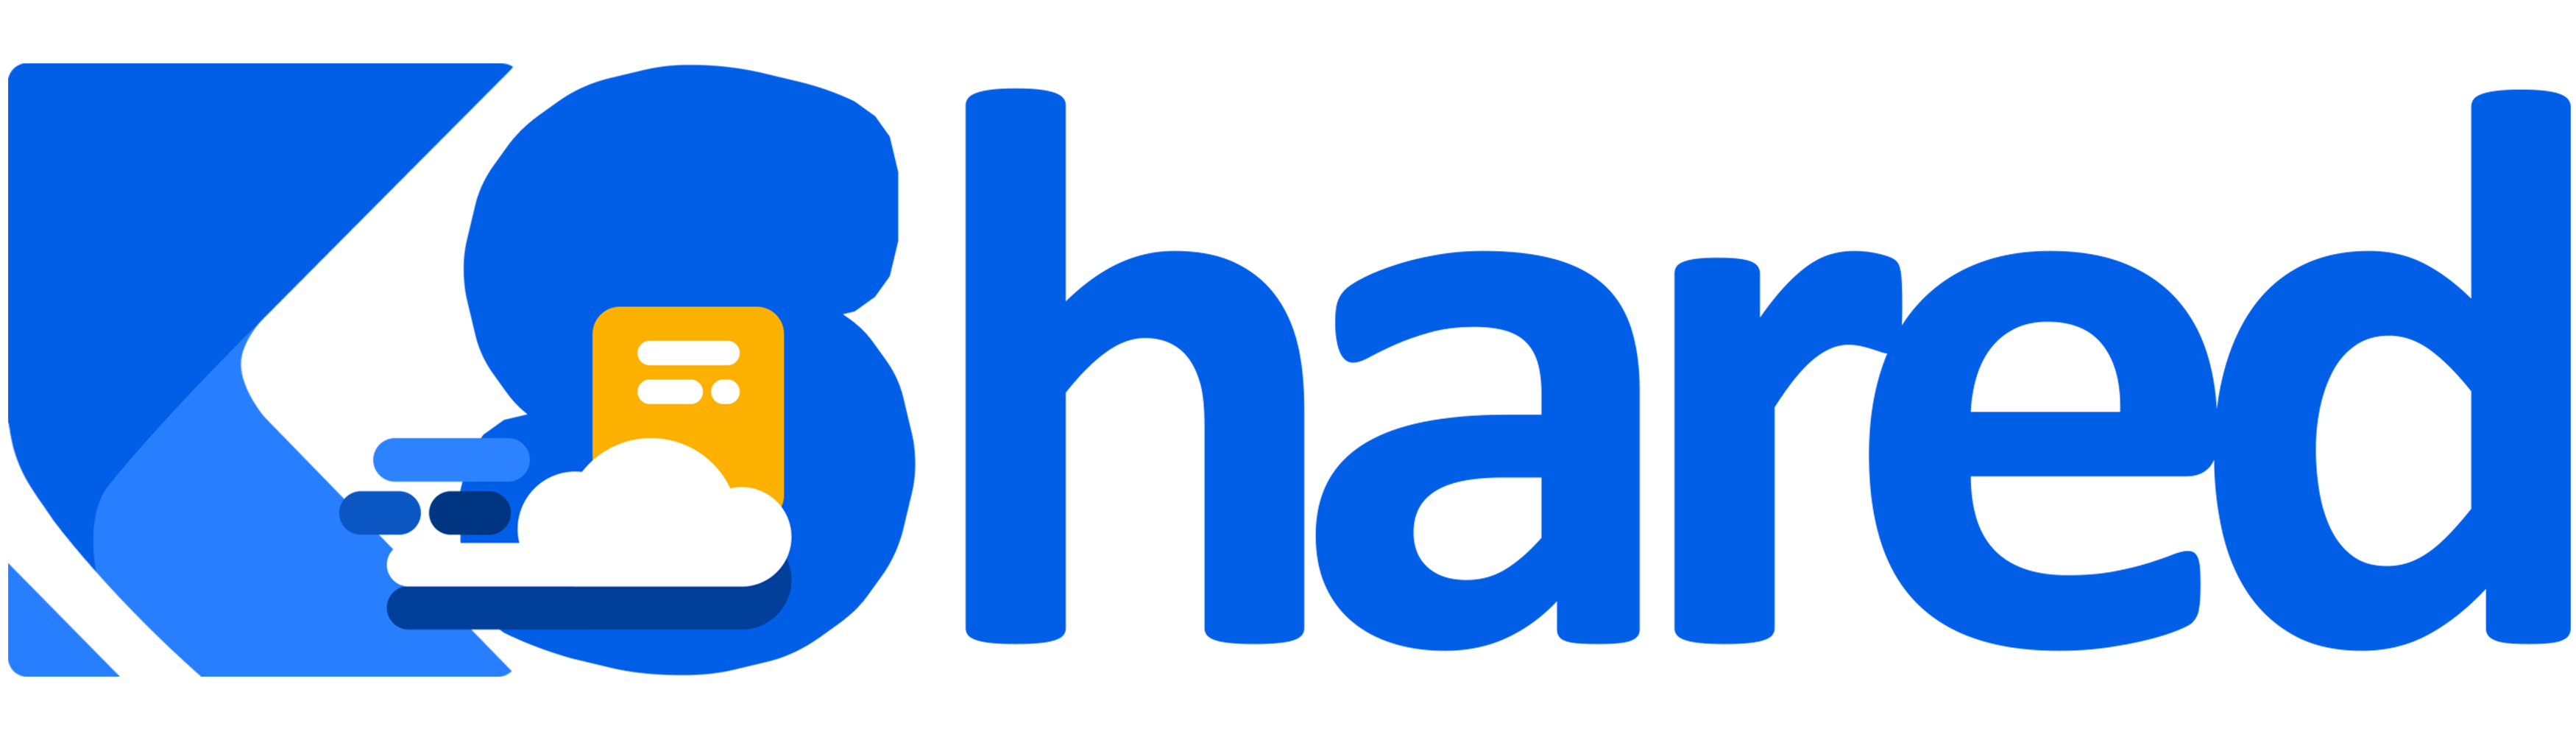 kshared.com